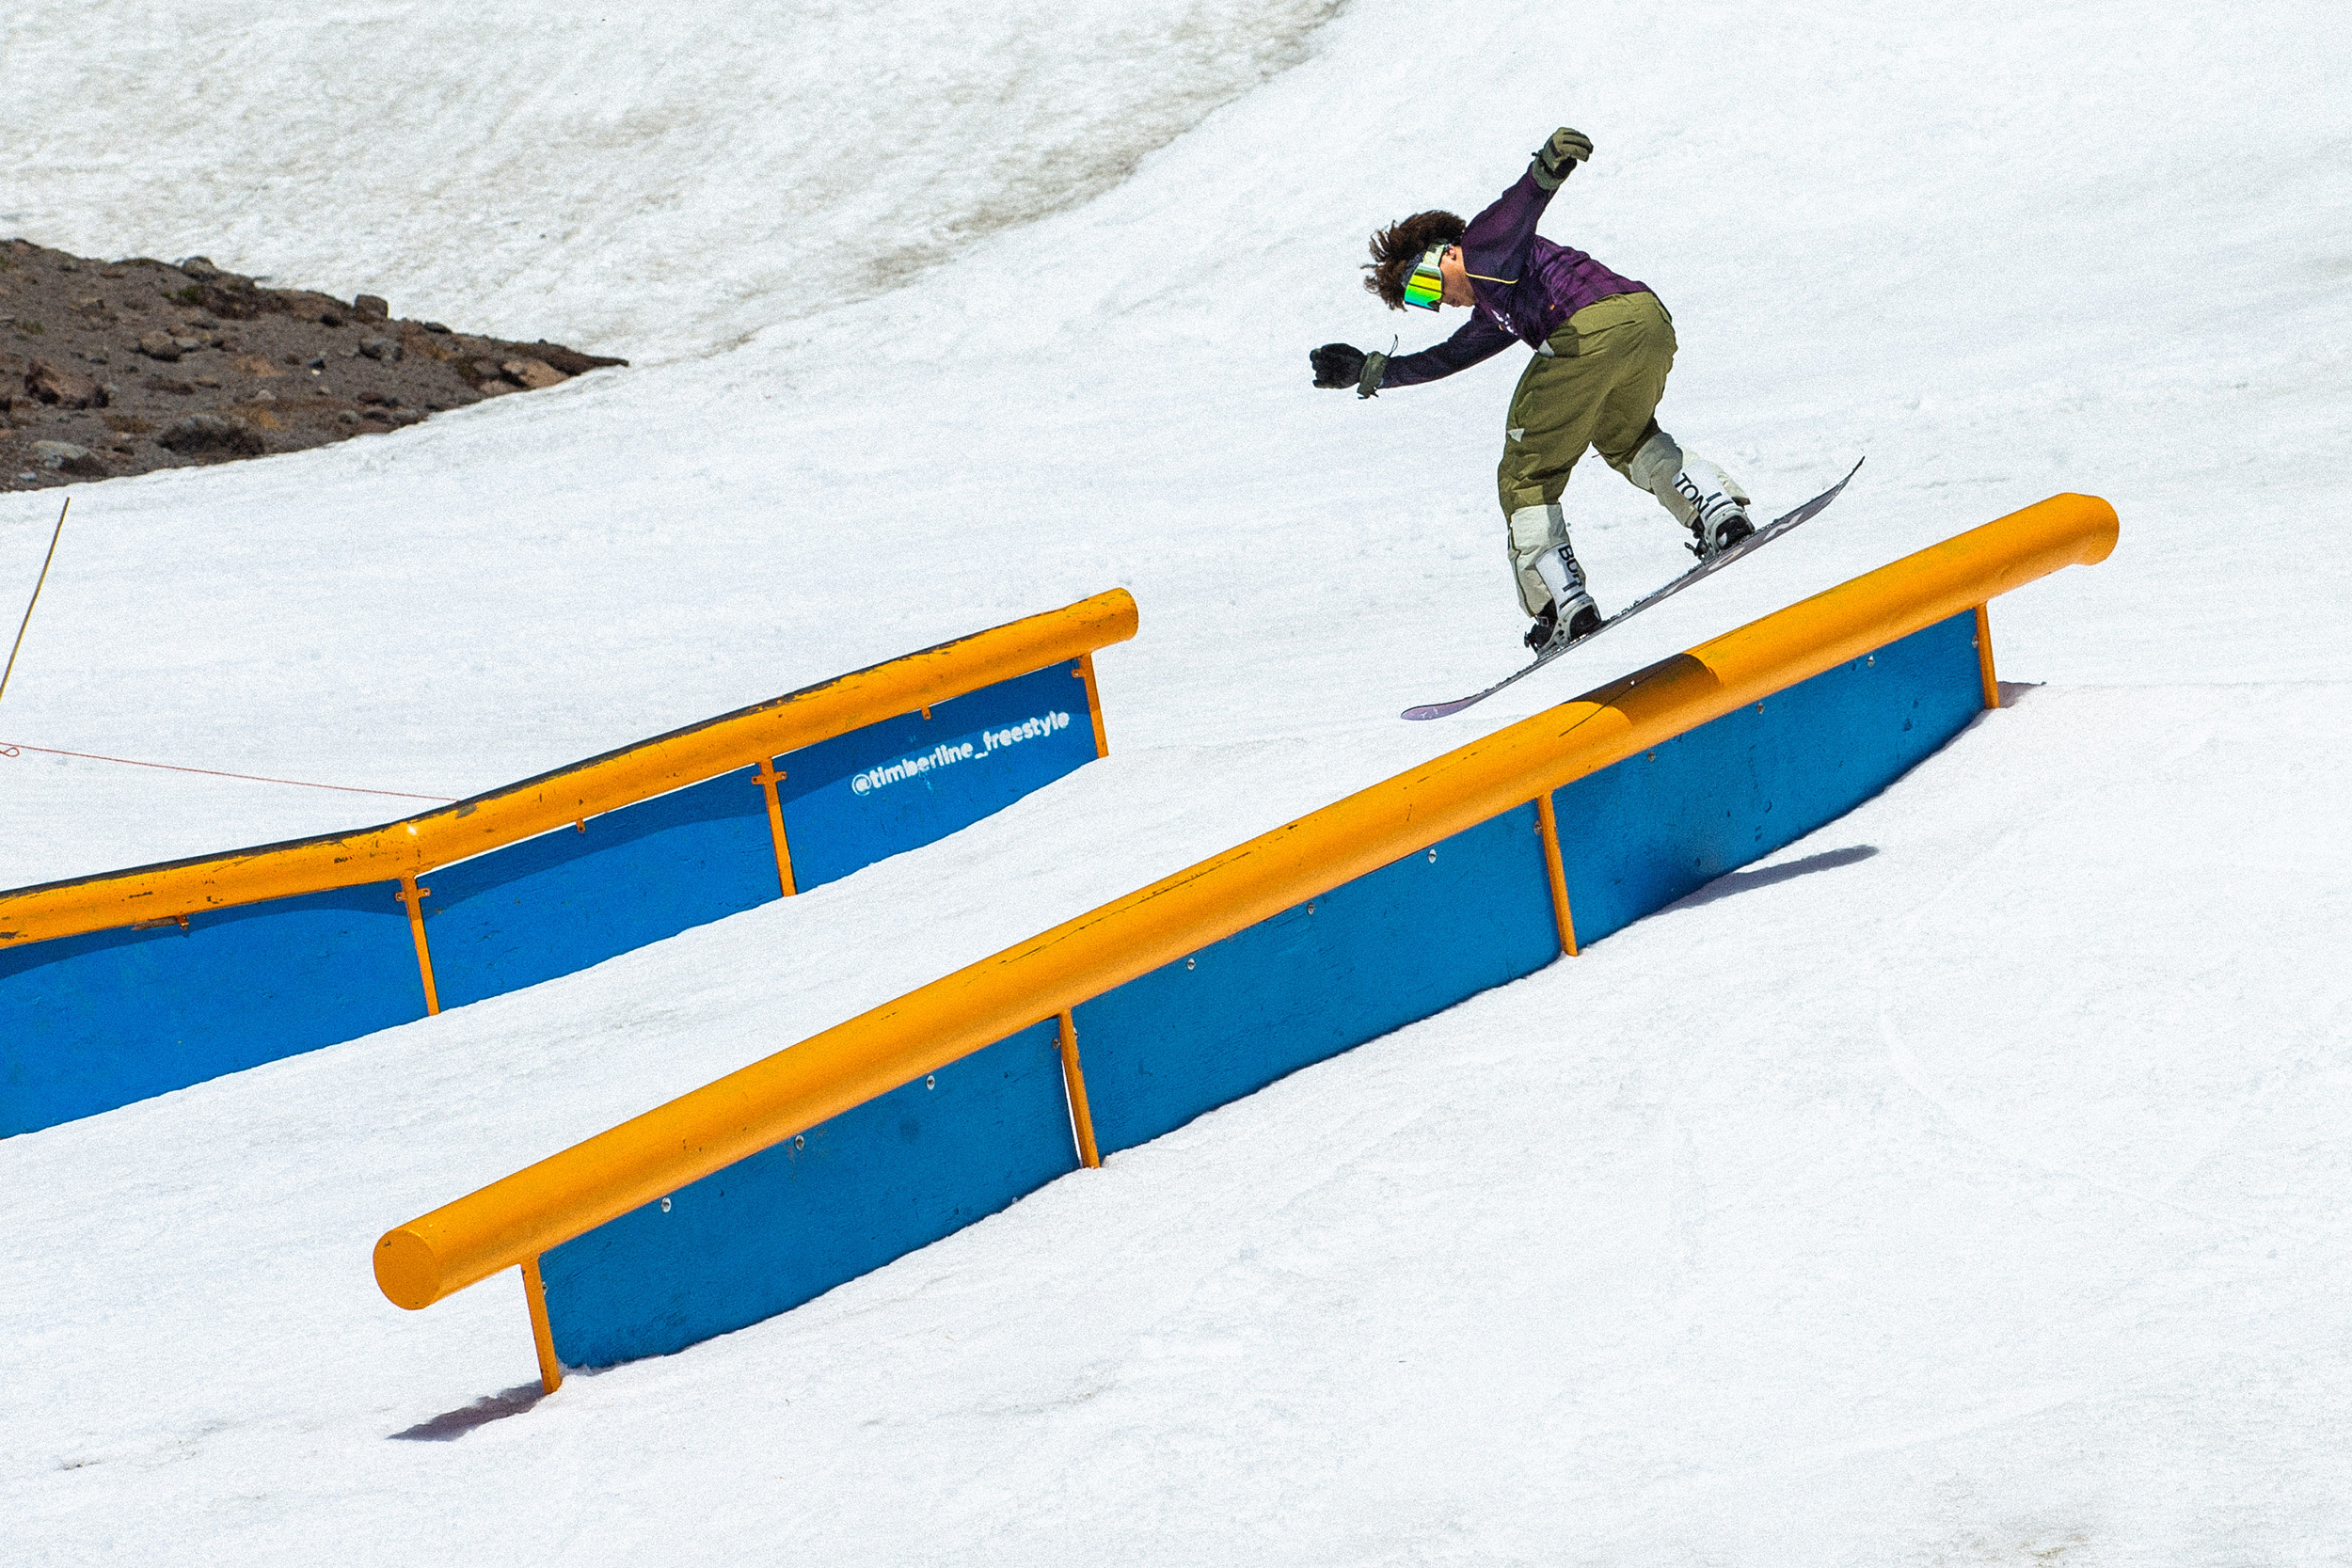 Raibu Katayama hits a rail on his snowboard